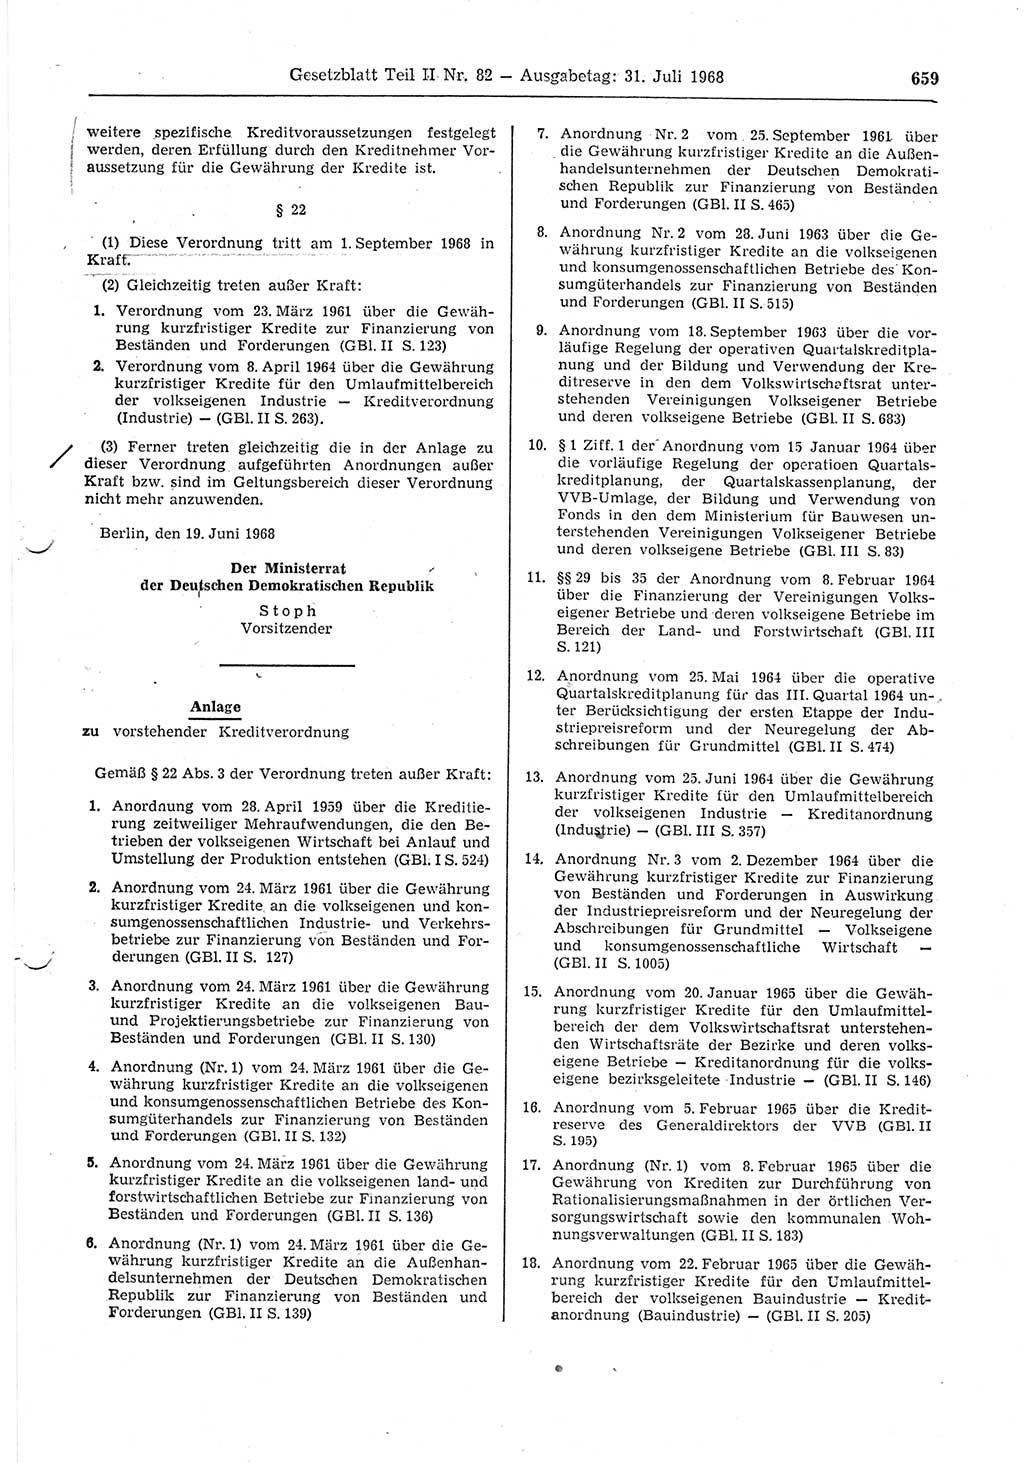 Gesetzblatt (GBl.) der Deutschen Demokratischen Republik (DDR) Teil ⅠⅠ 1968, Seite 659 (GBl. DDR ⅠⅠ 1968, S. 659)